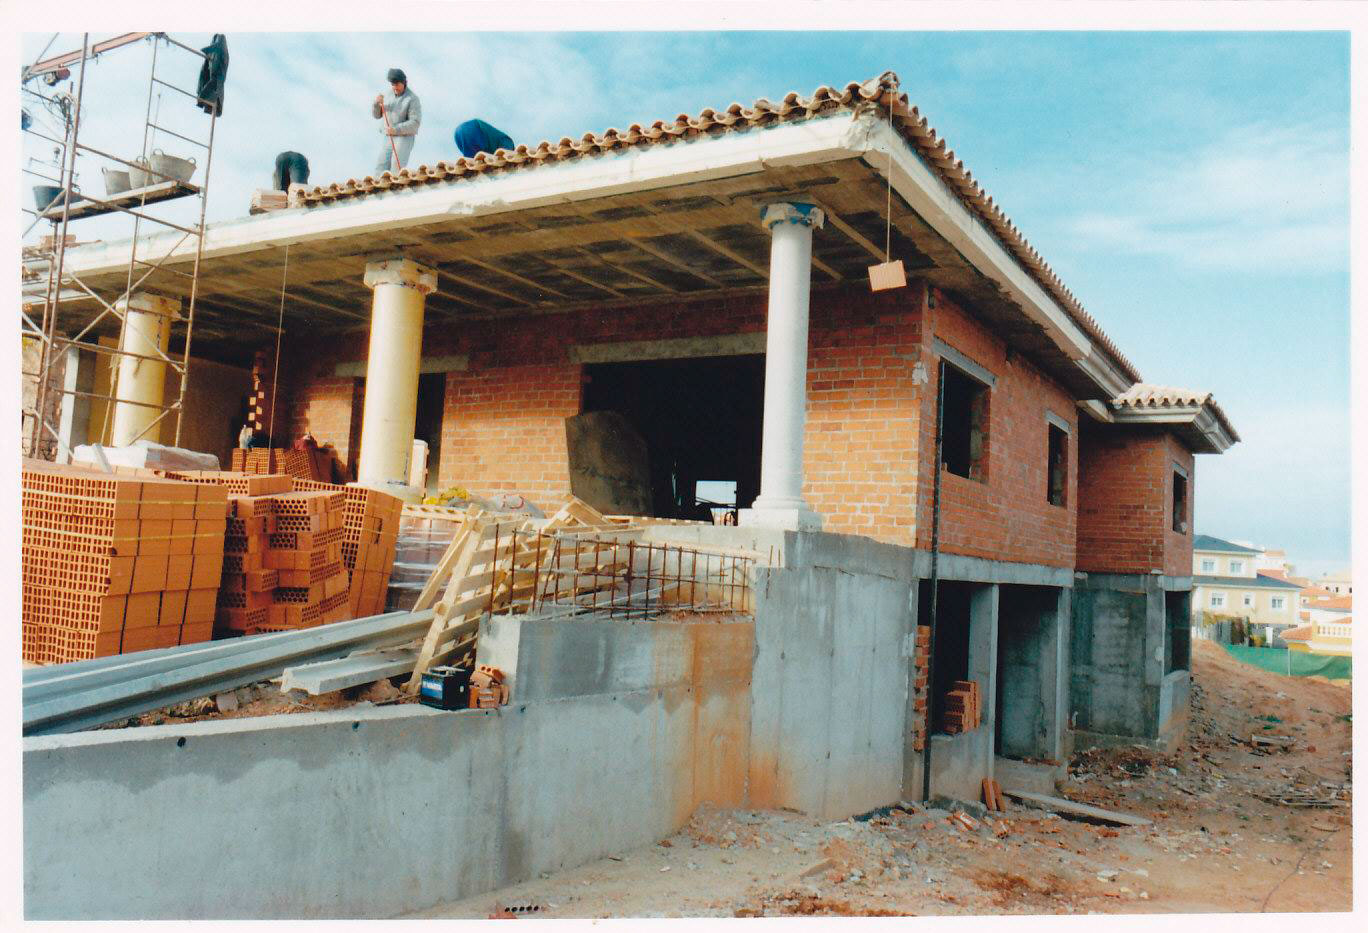 Diversas viviendas unifamiliares en Las Vaguadas